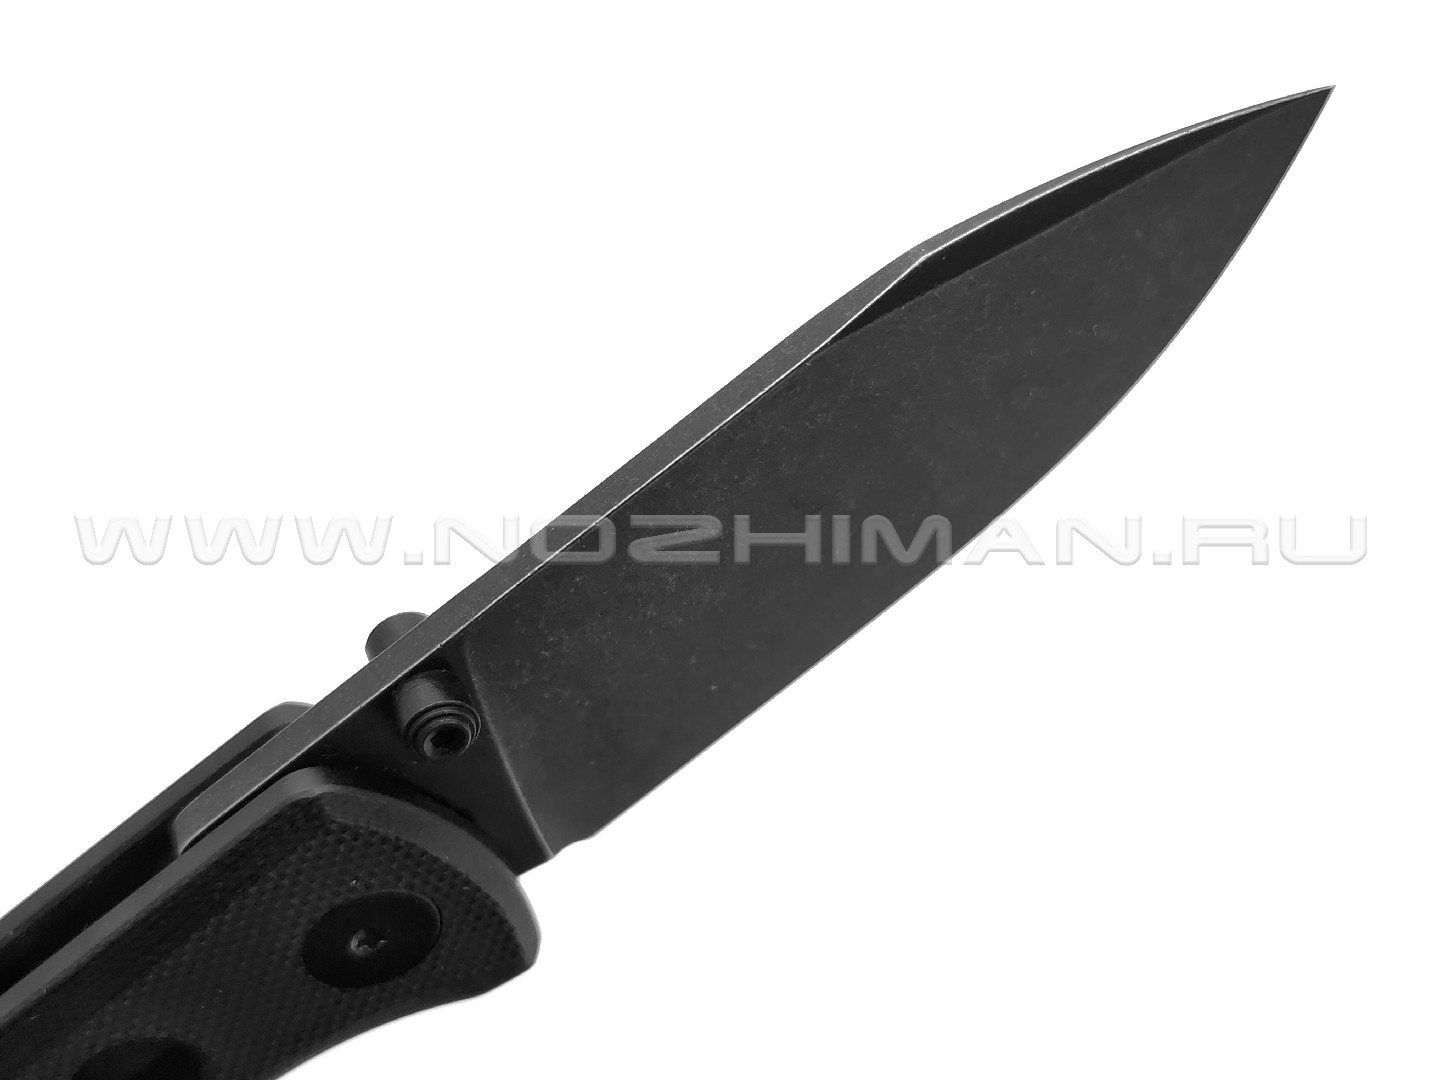 Нож QSP Canary folder QS150-A2 сталь 14C28N black, рукоять G10 black